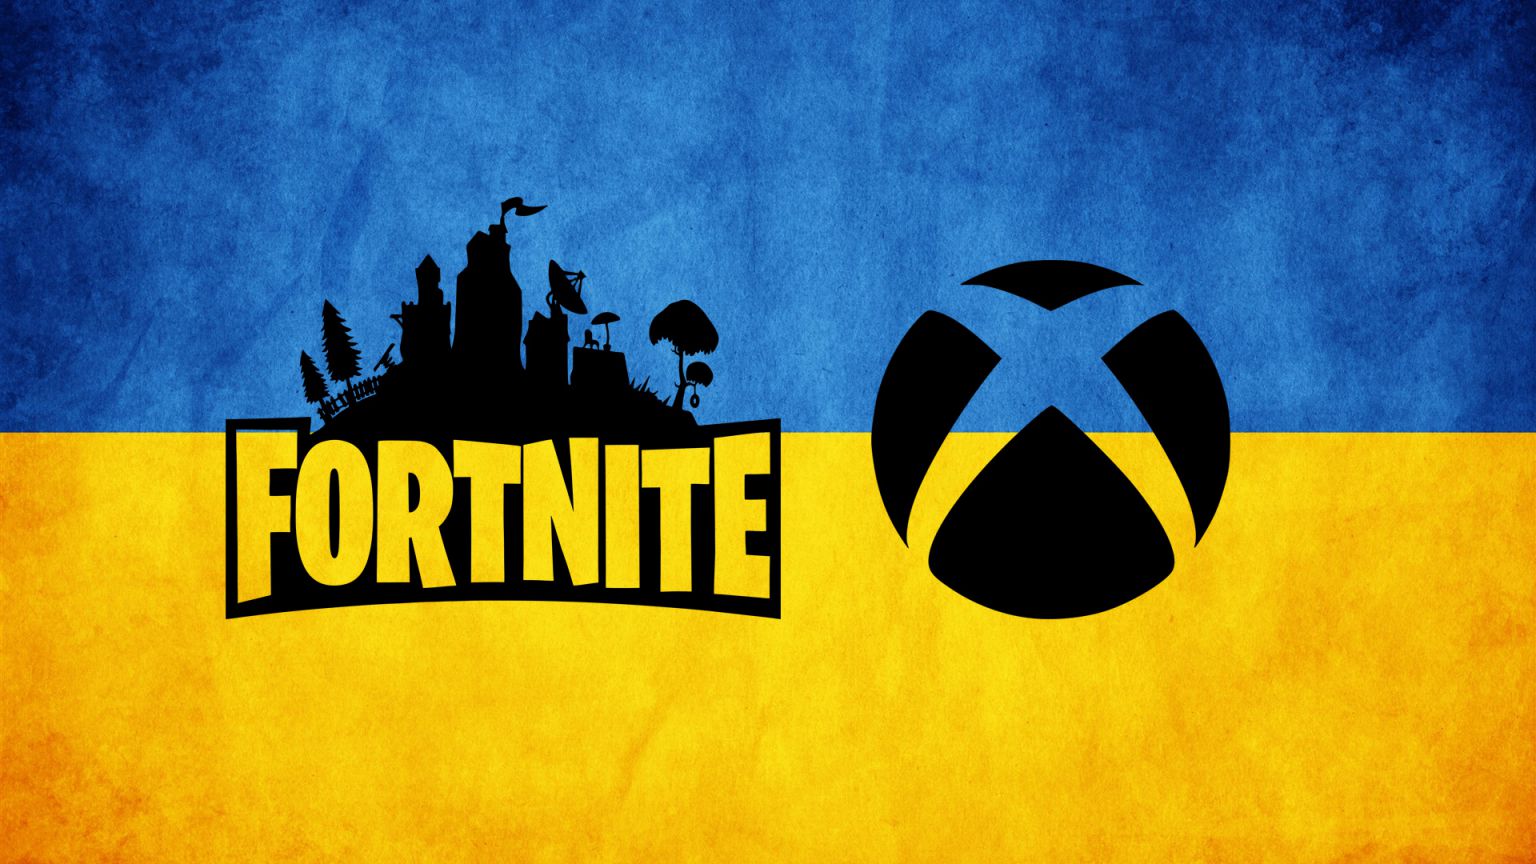 La cuenta oficial de Fortnite anuncia que se ha unido a Xbox para donar los ingresos del juego a Ucrania y enviar ayuda humanitaria.